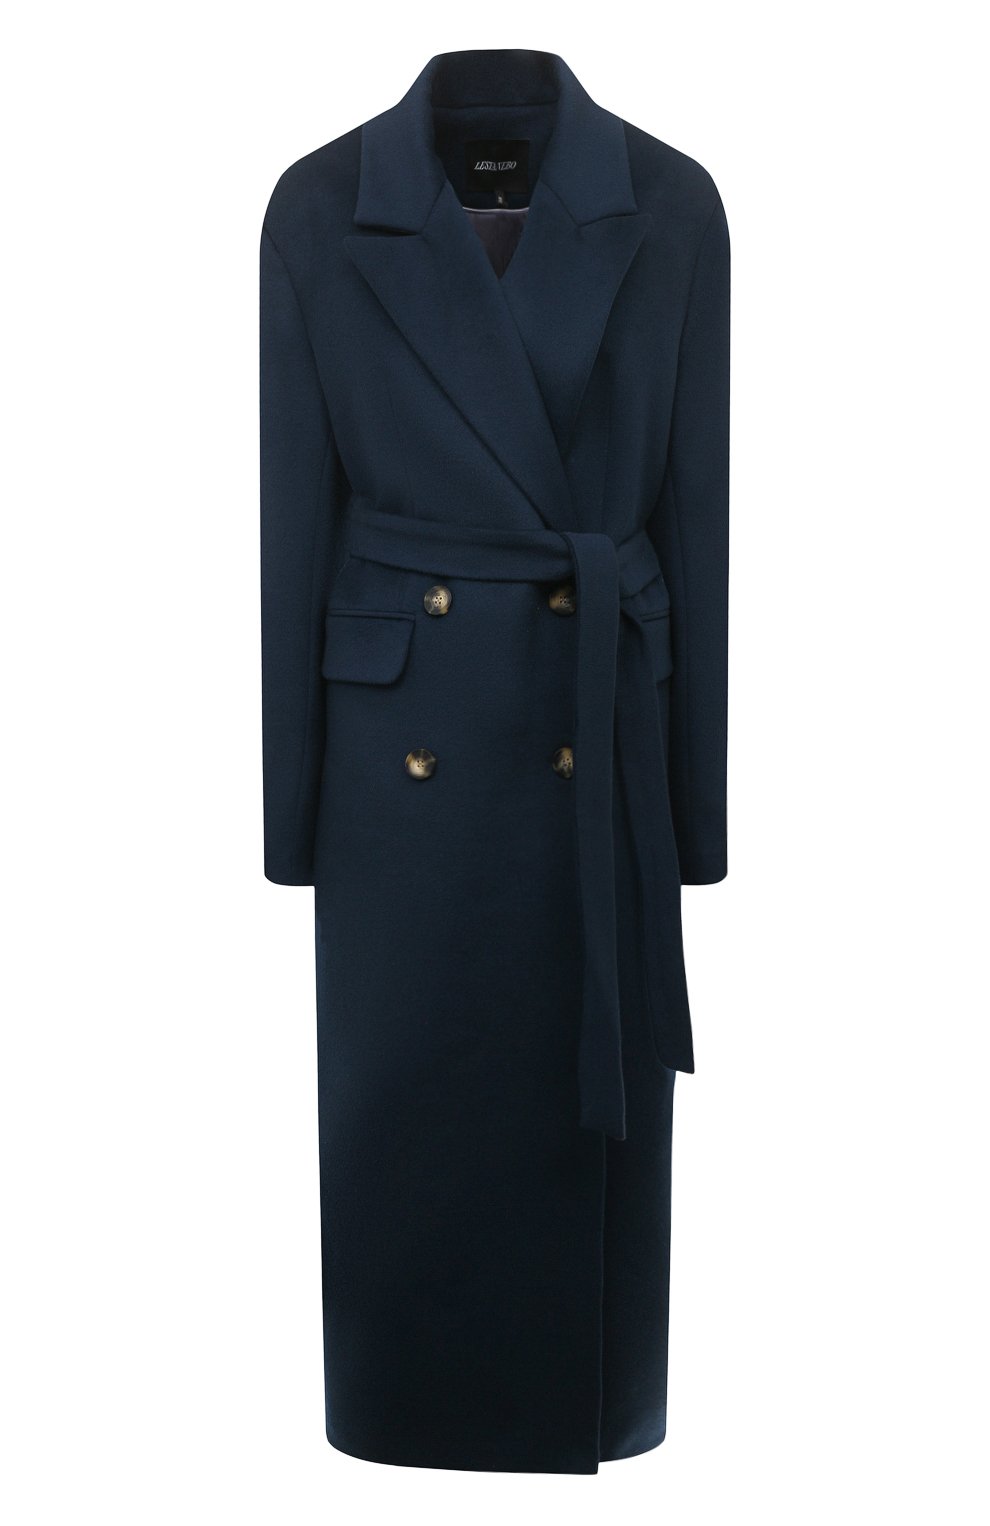 Синее пальто: с чем носить (темное, прямое, длинное), фото - Шкатулка красоты